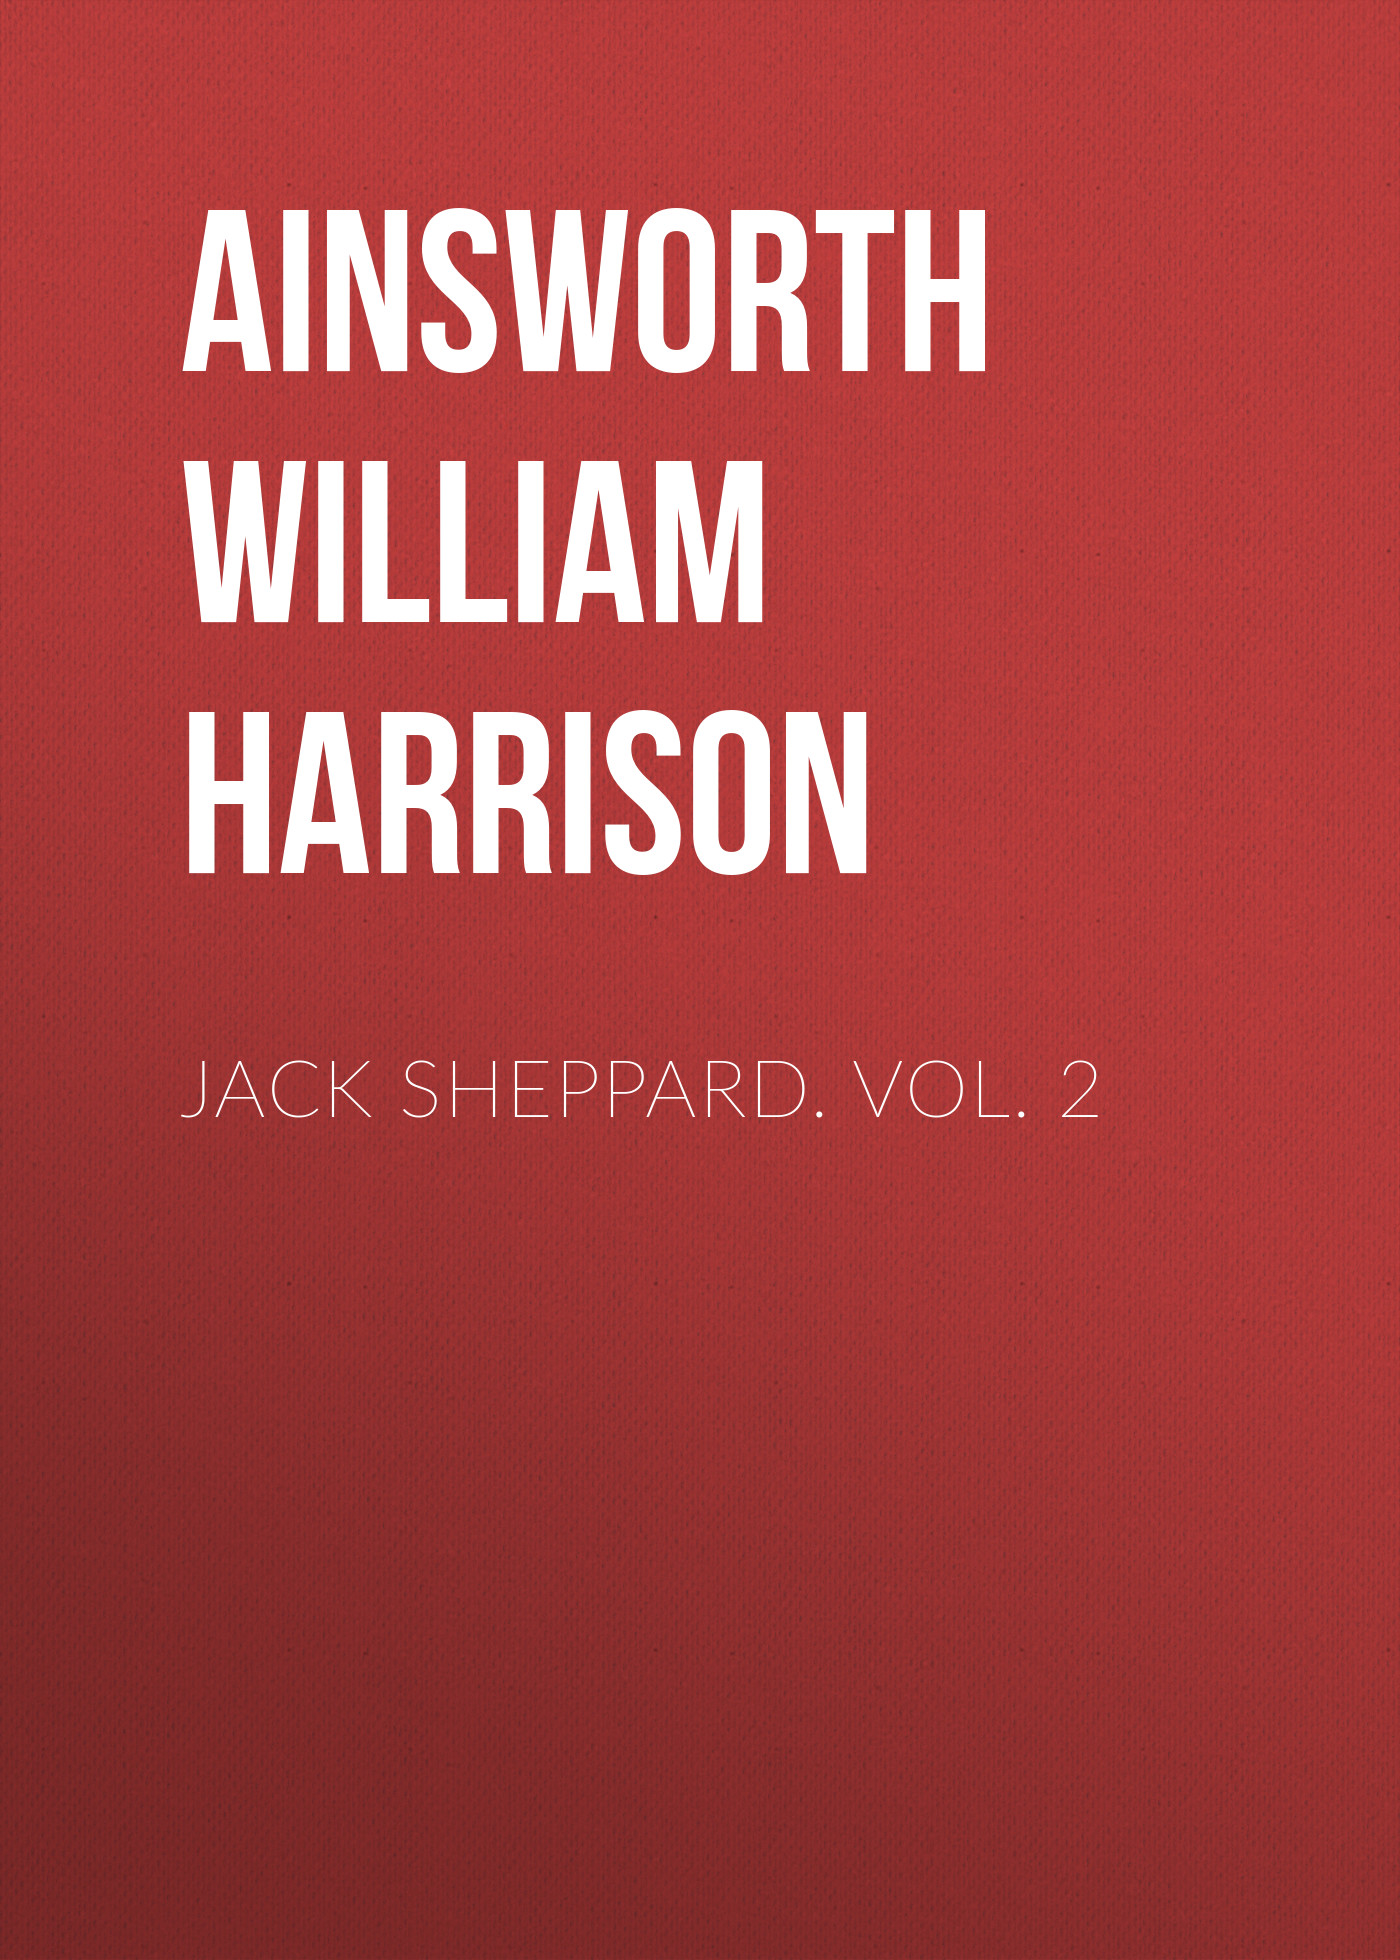 Книга Jack Sheppard. Vol. 2 из серии , созданная William Ainsworth, может относится к жанру Зарубежная классика, Литература 19 века, Европейская старинная литература. Стоимость электронной книги Jack Sheppard. Vol. 2 с идентификатором 36367598 составляет 0 руб.